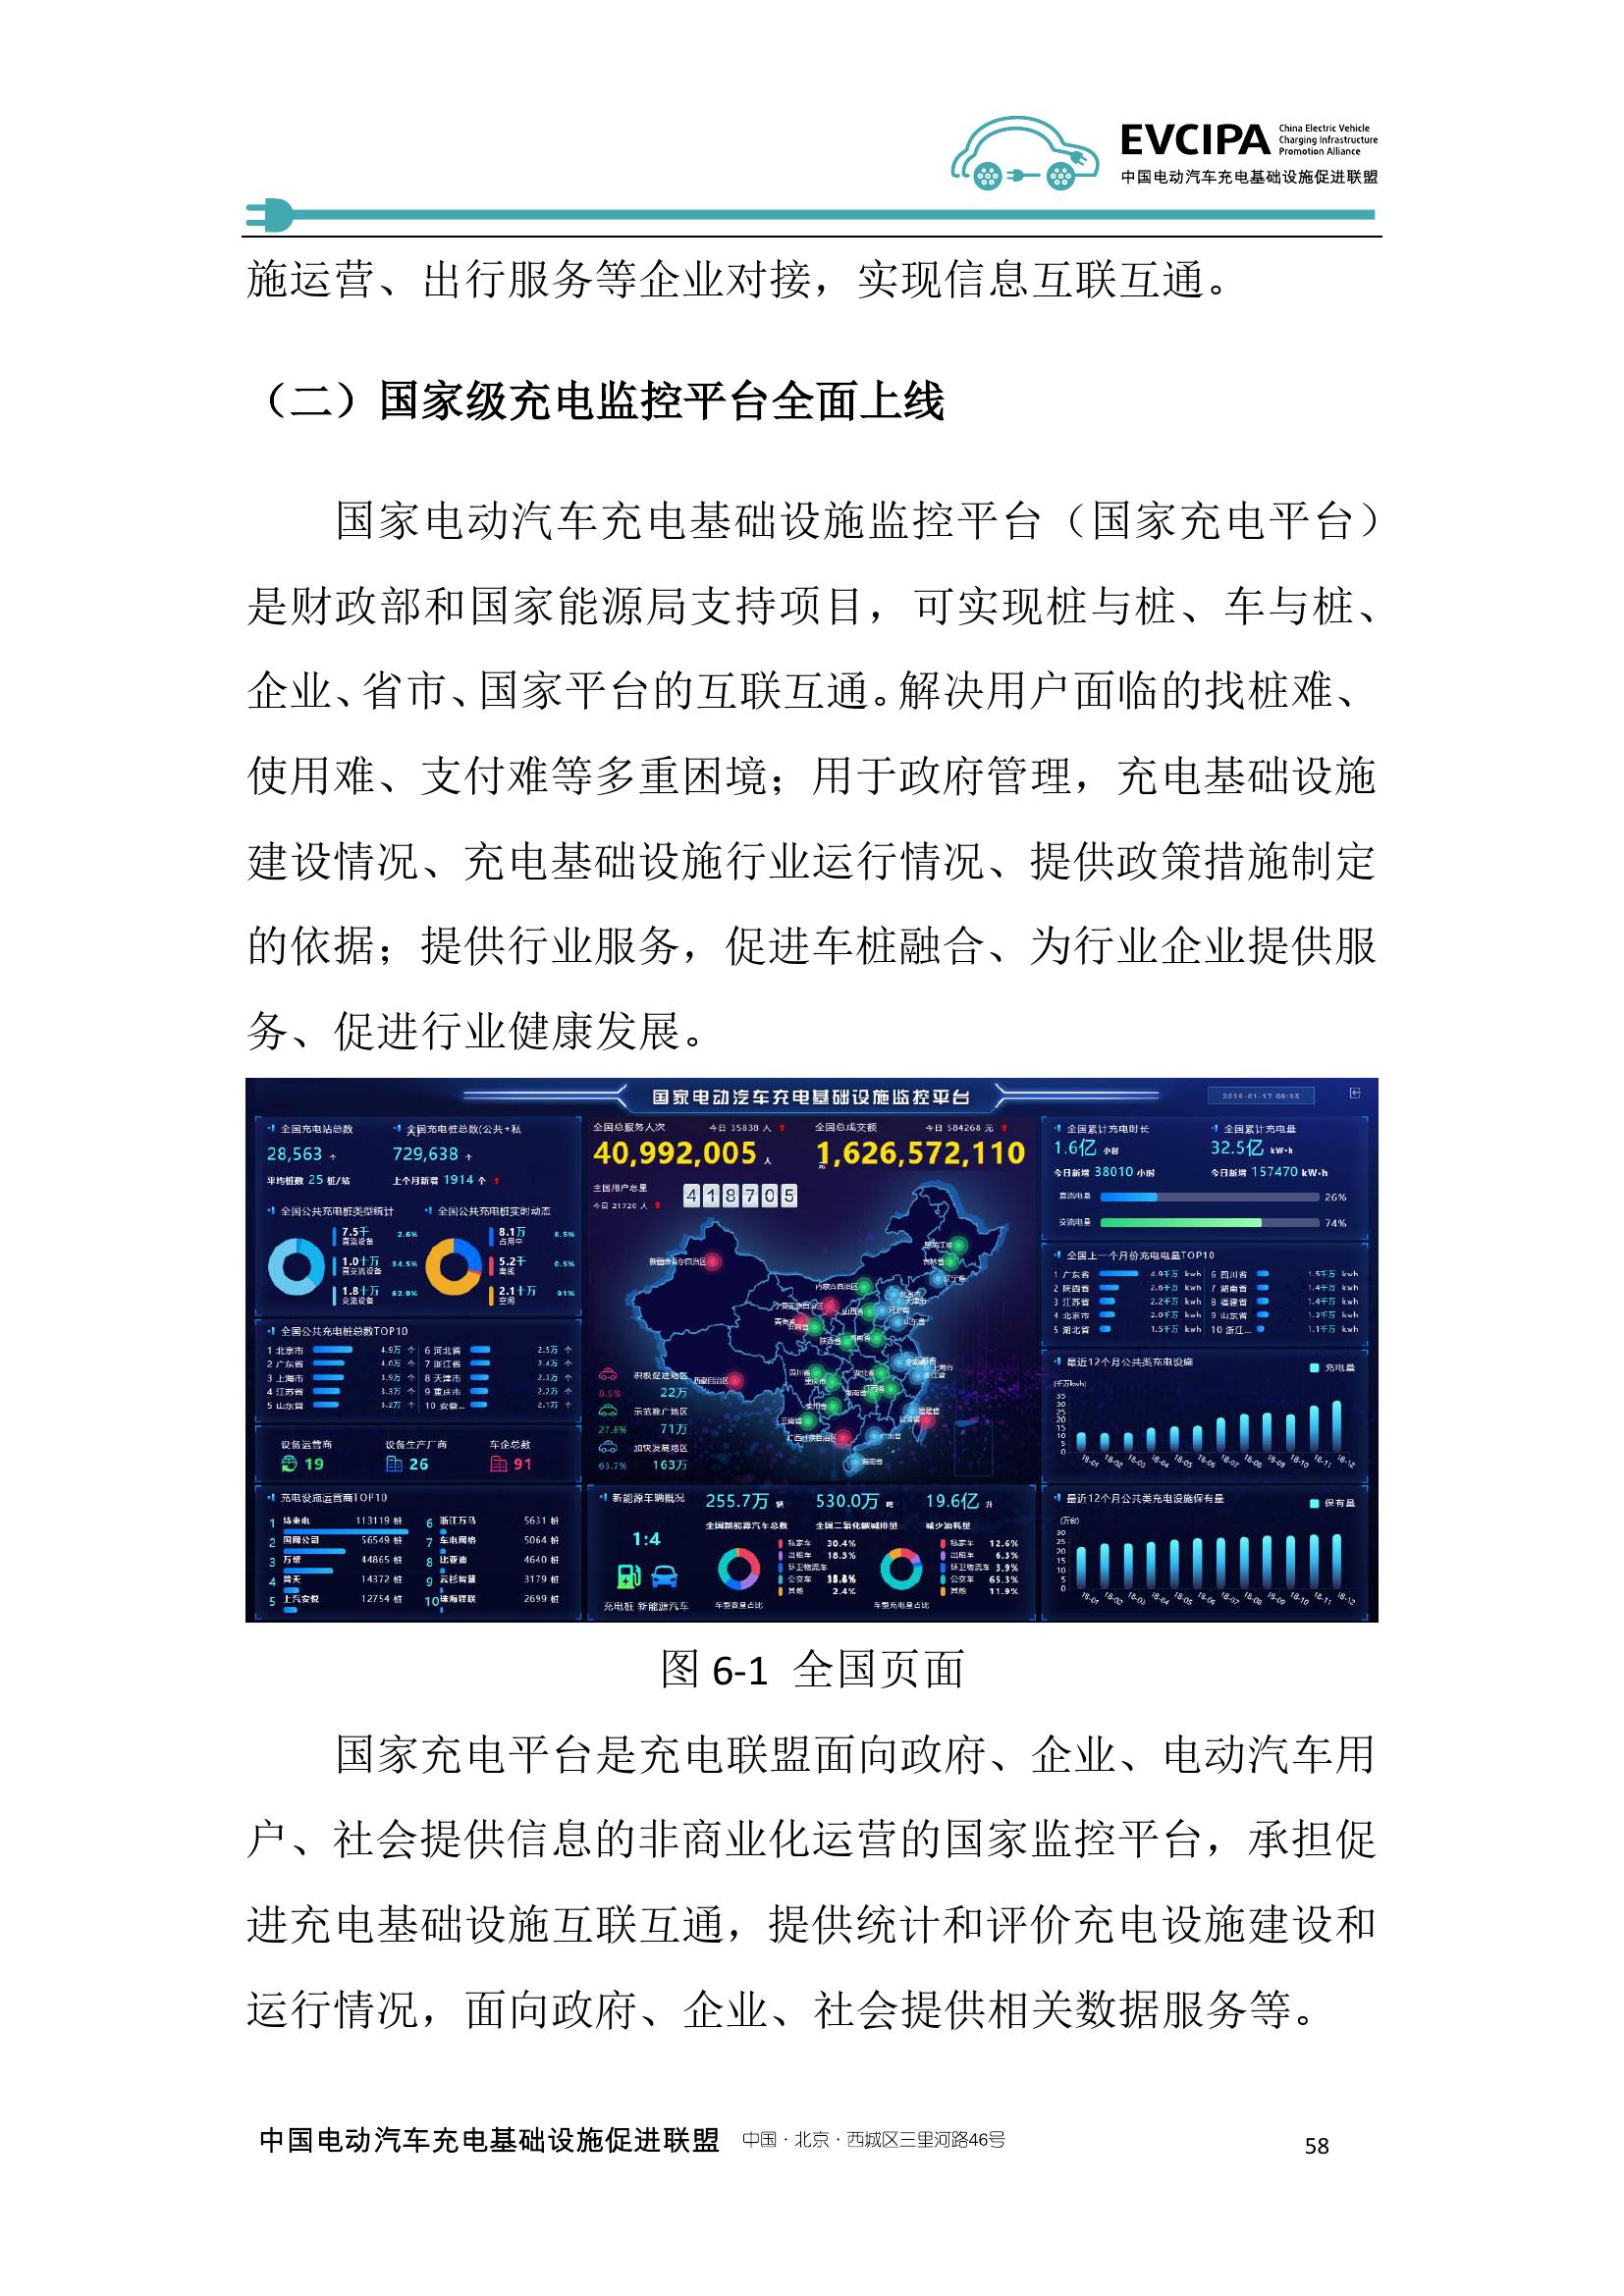 2019-2020年度中国充电基础设施发展报告_000066.jpg